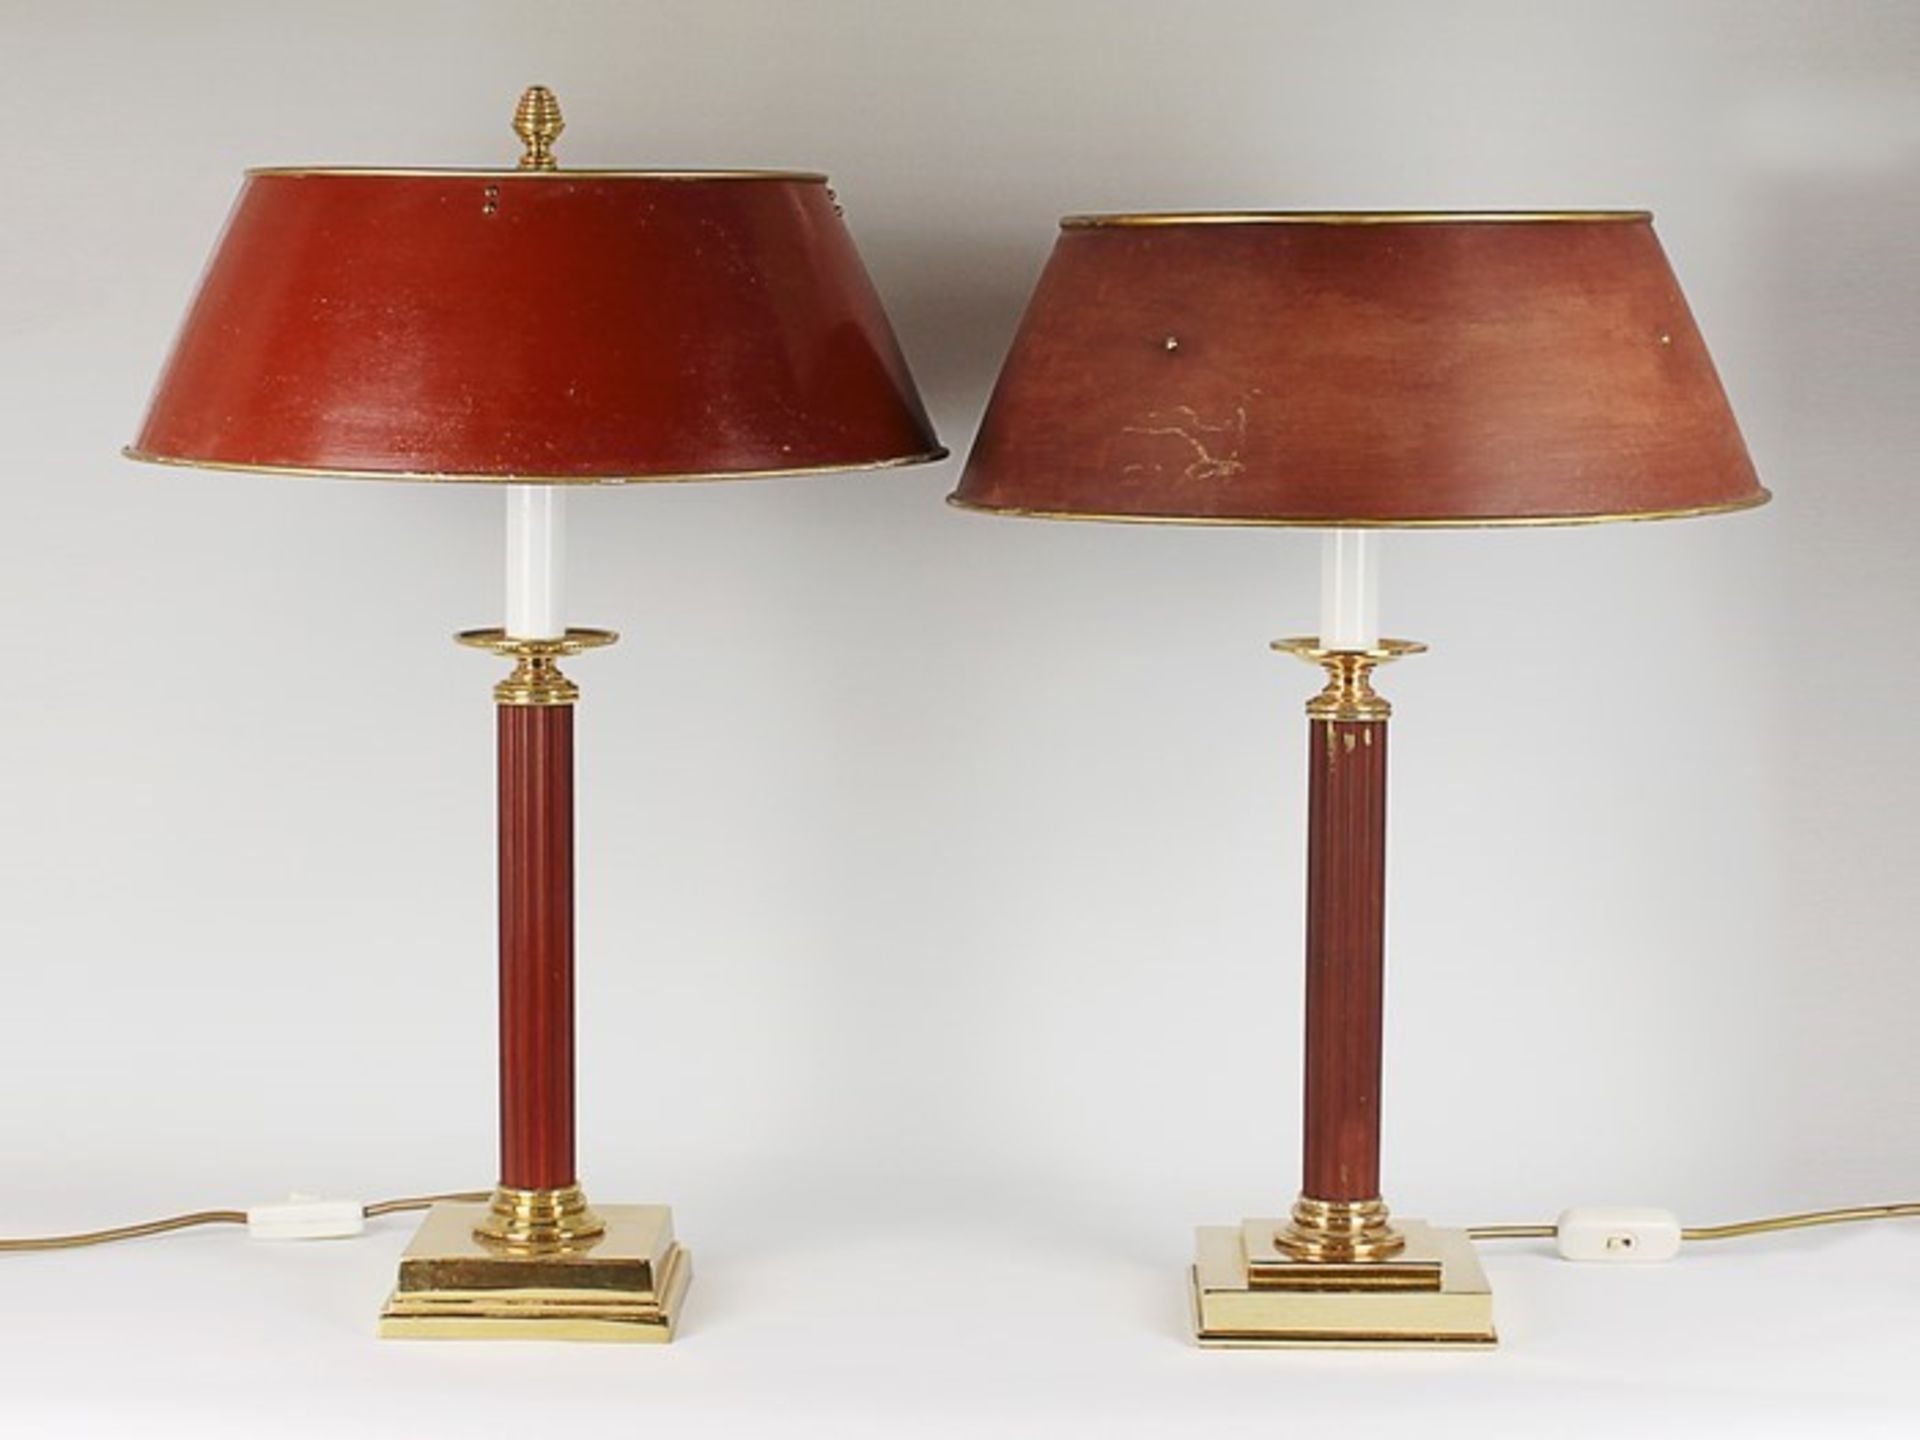 Paar TischlampenMetall, goldfarben u. rot gefasst, 2-flammig, quadratischer Fuß, kannelierter